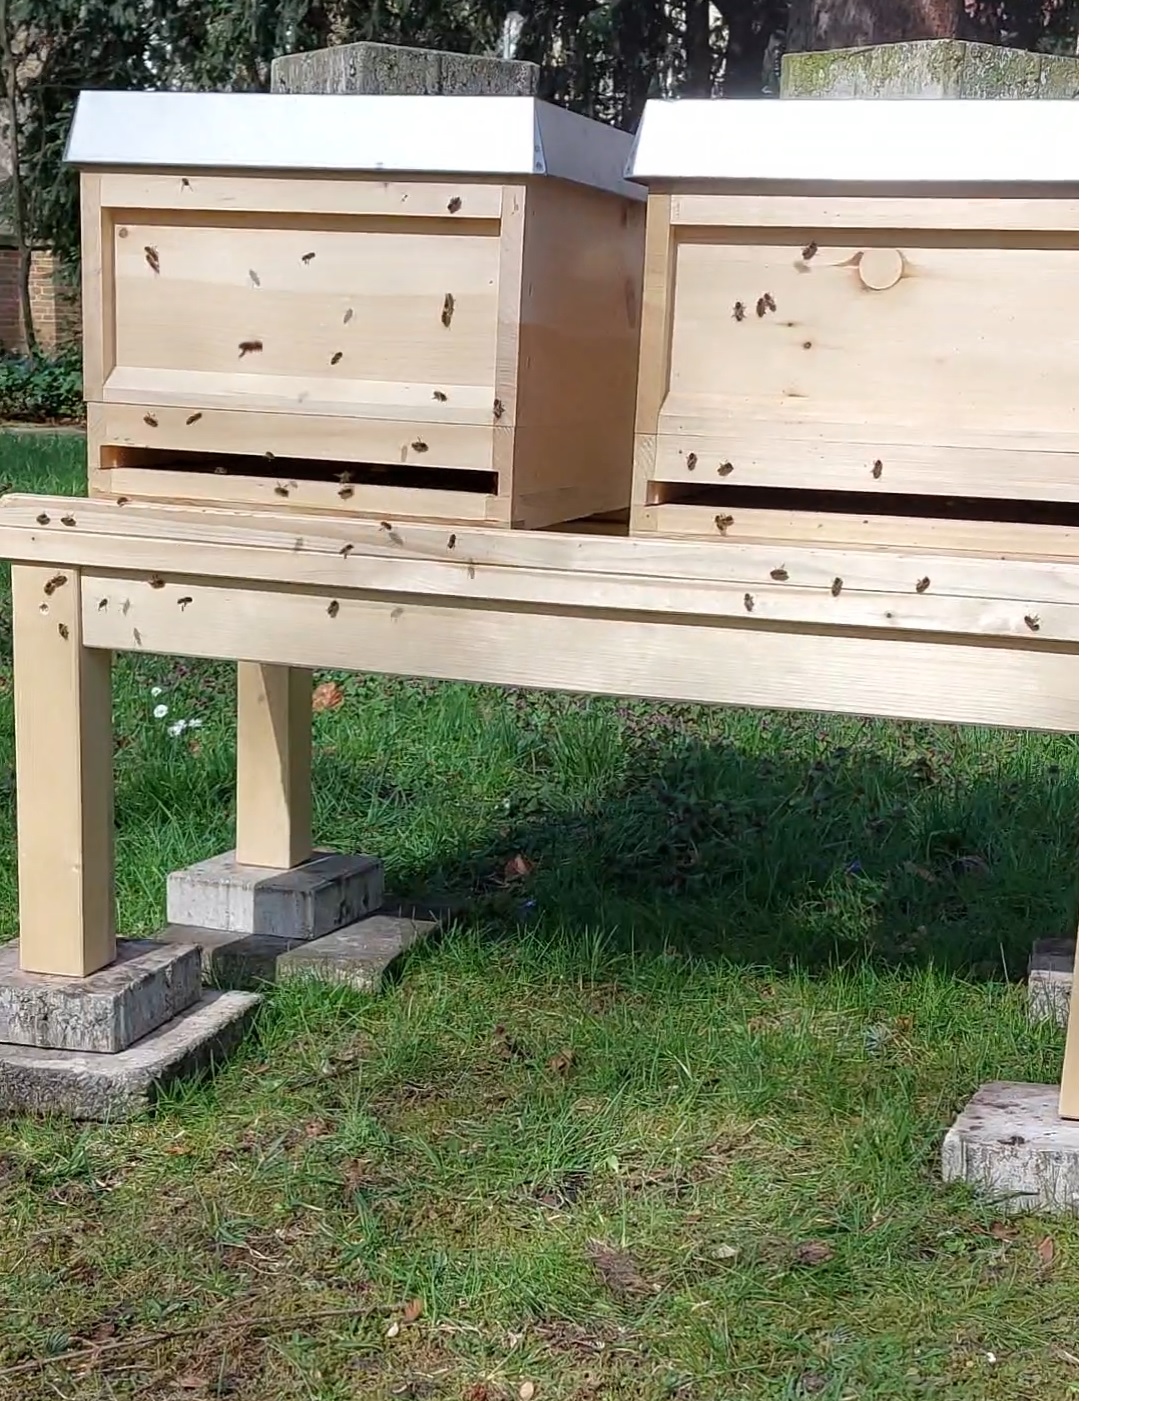 Unsere Bienen werden bereitgestellt von den Caritas-Betriebs- und Werkstätten (https://www.cbw-gmbh.de/de/Bienen_Support)